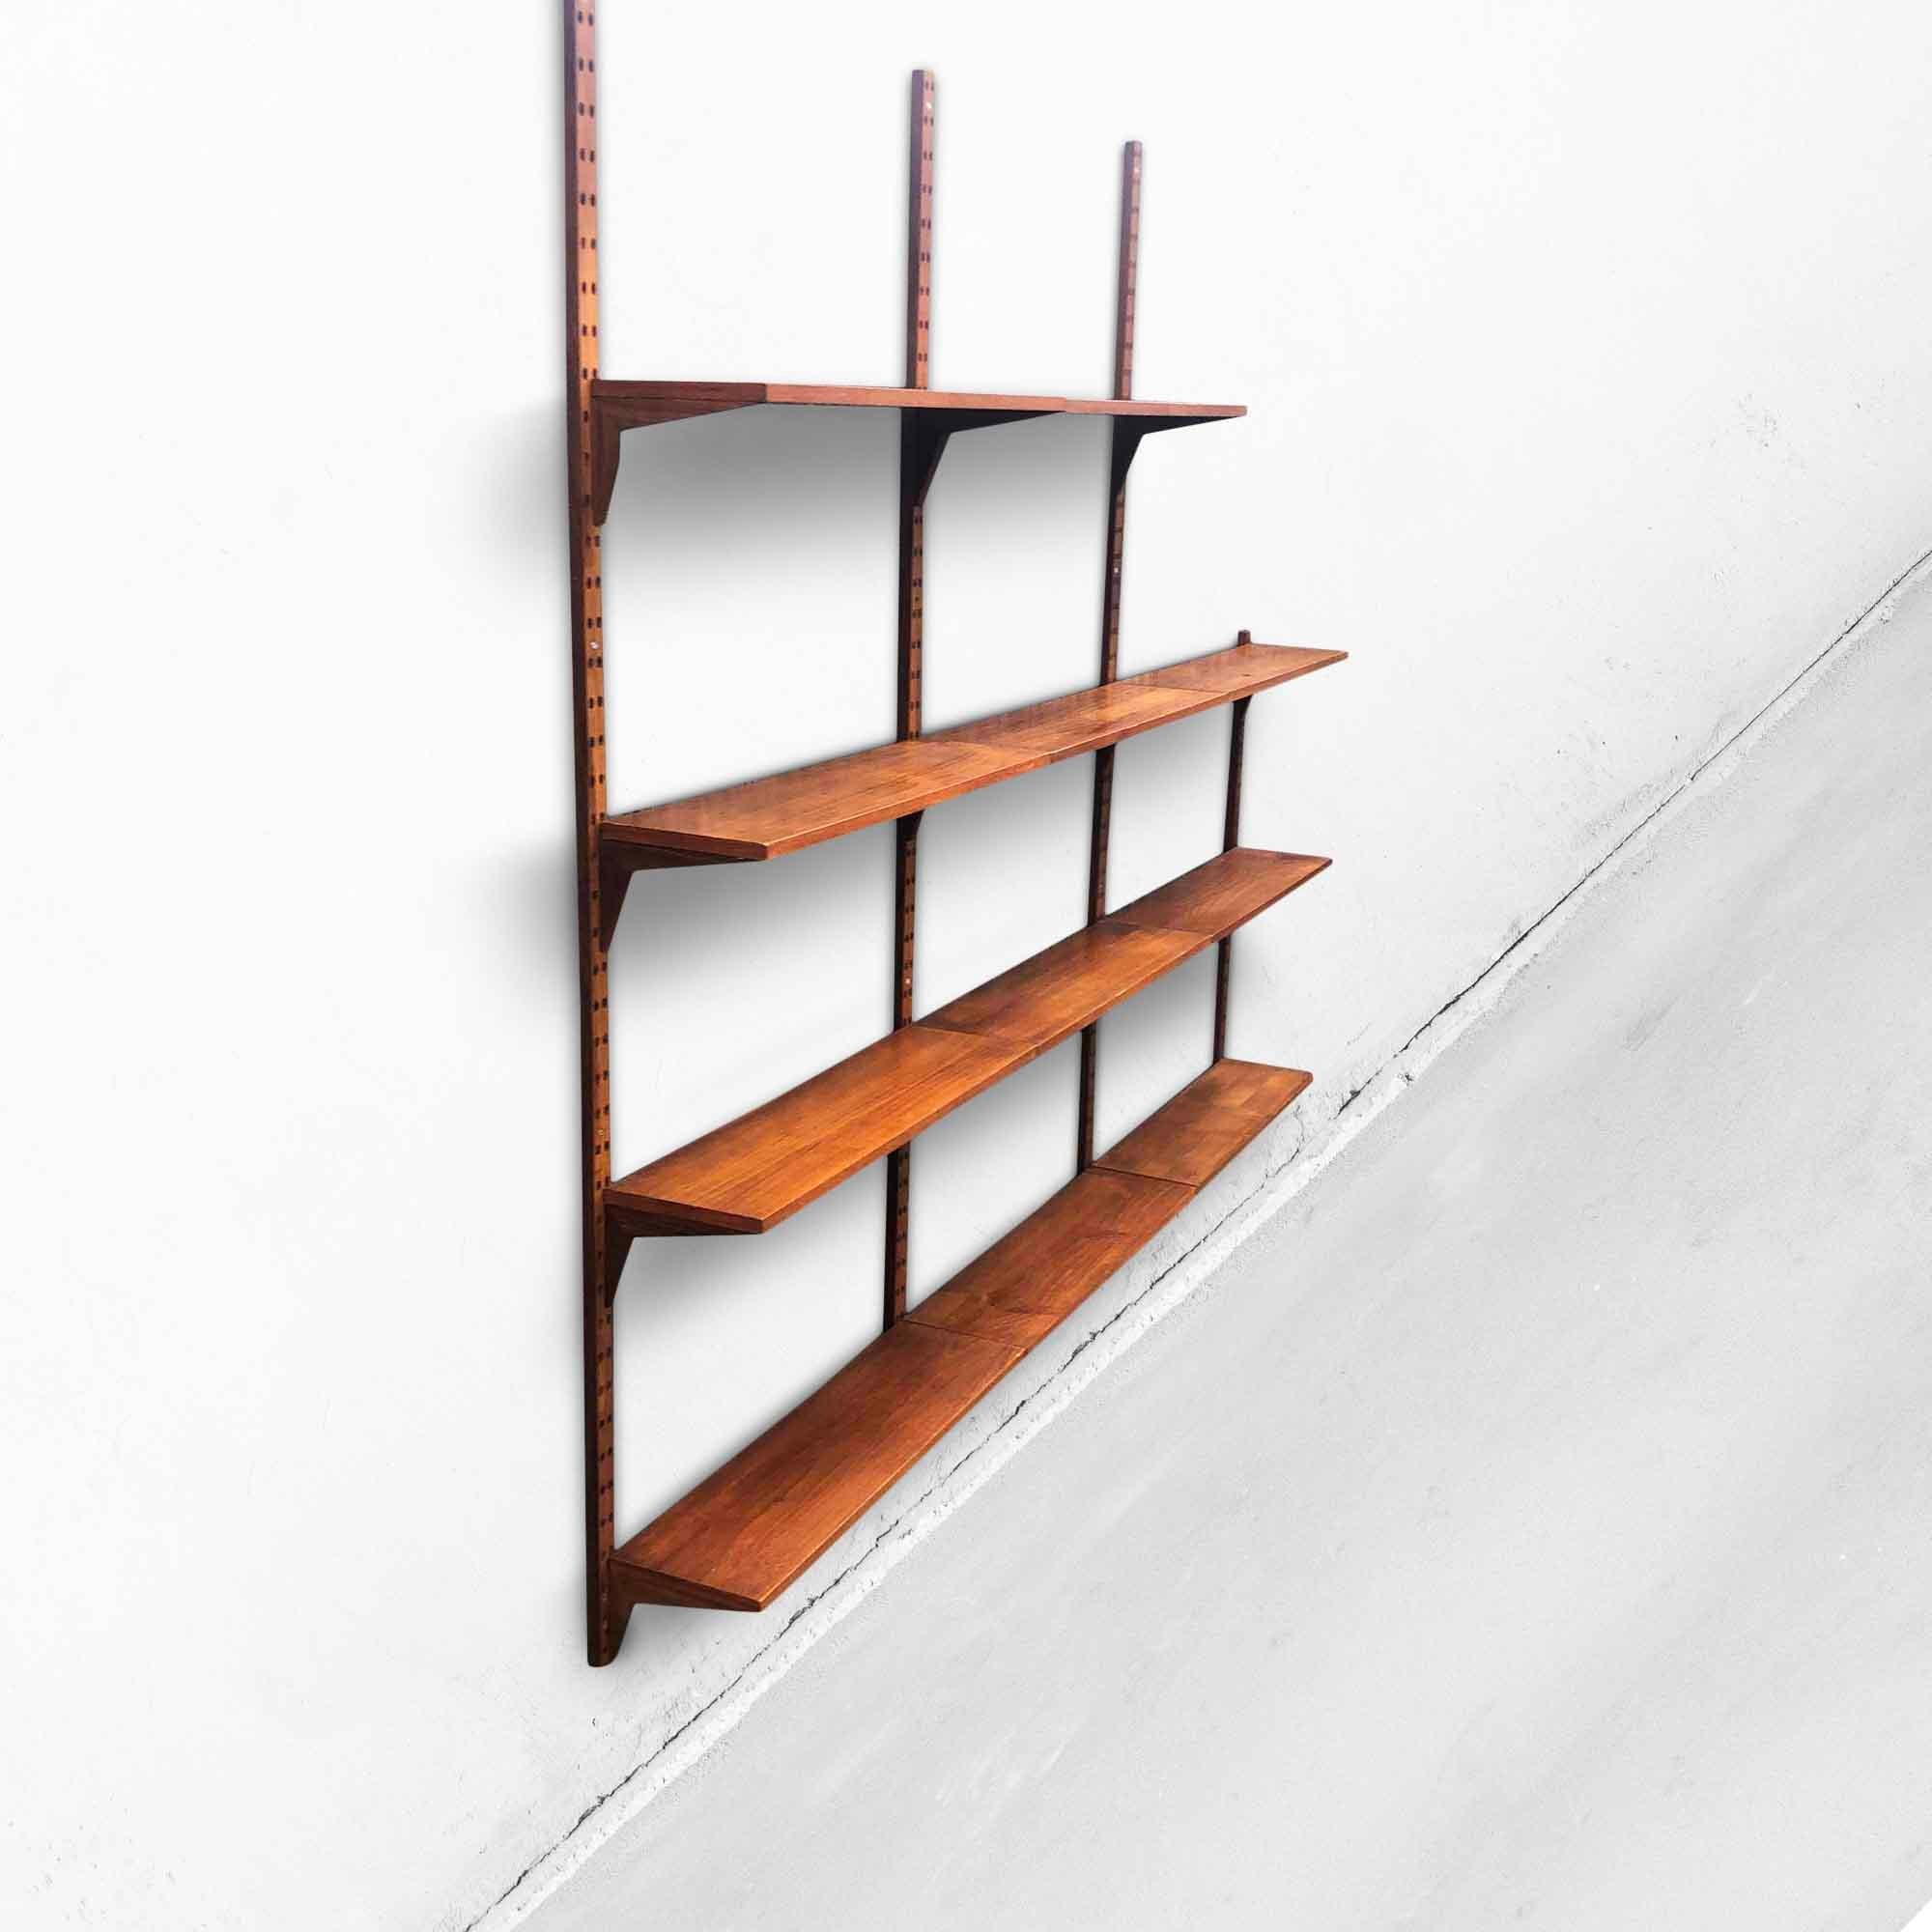 Poul Cadovius Cado Wall Unit with Shelves 1